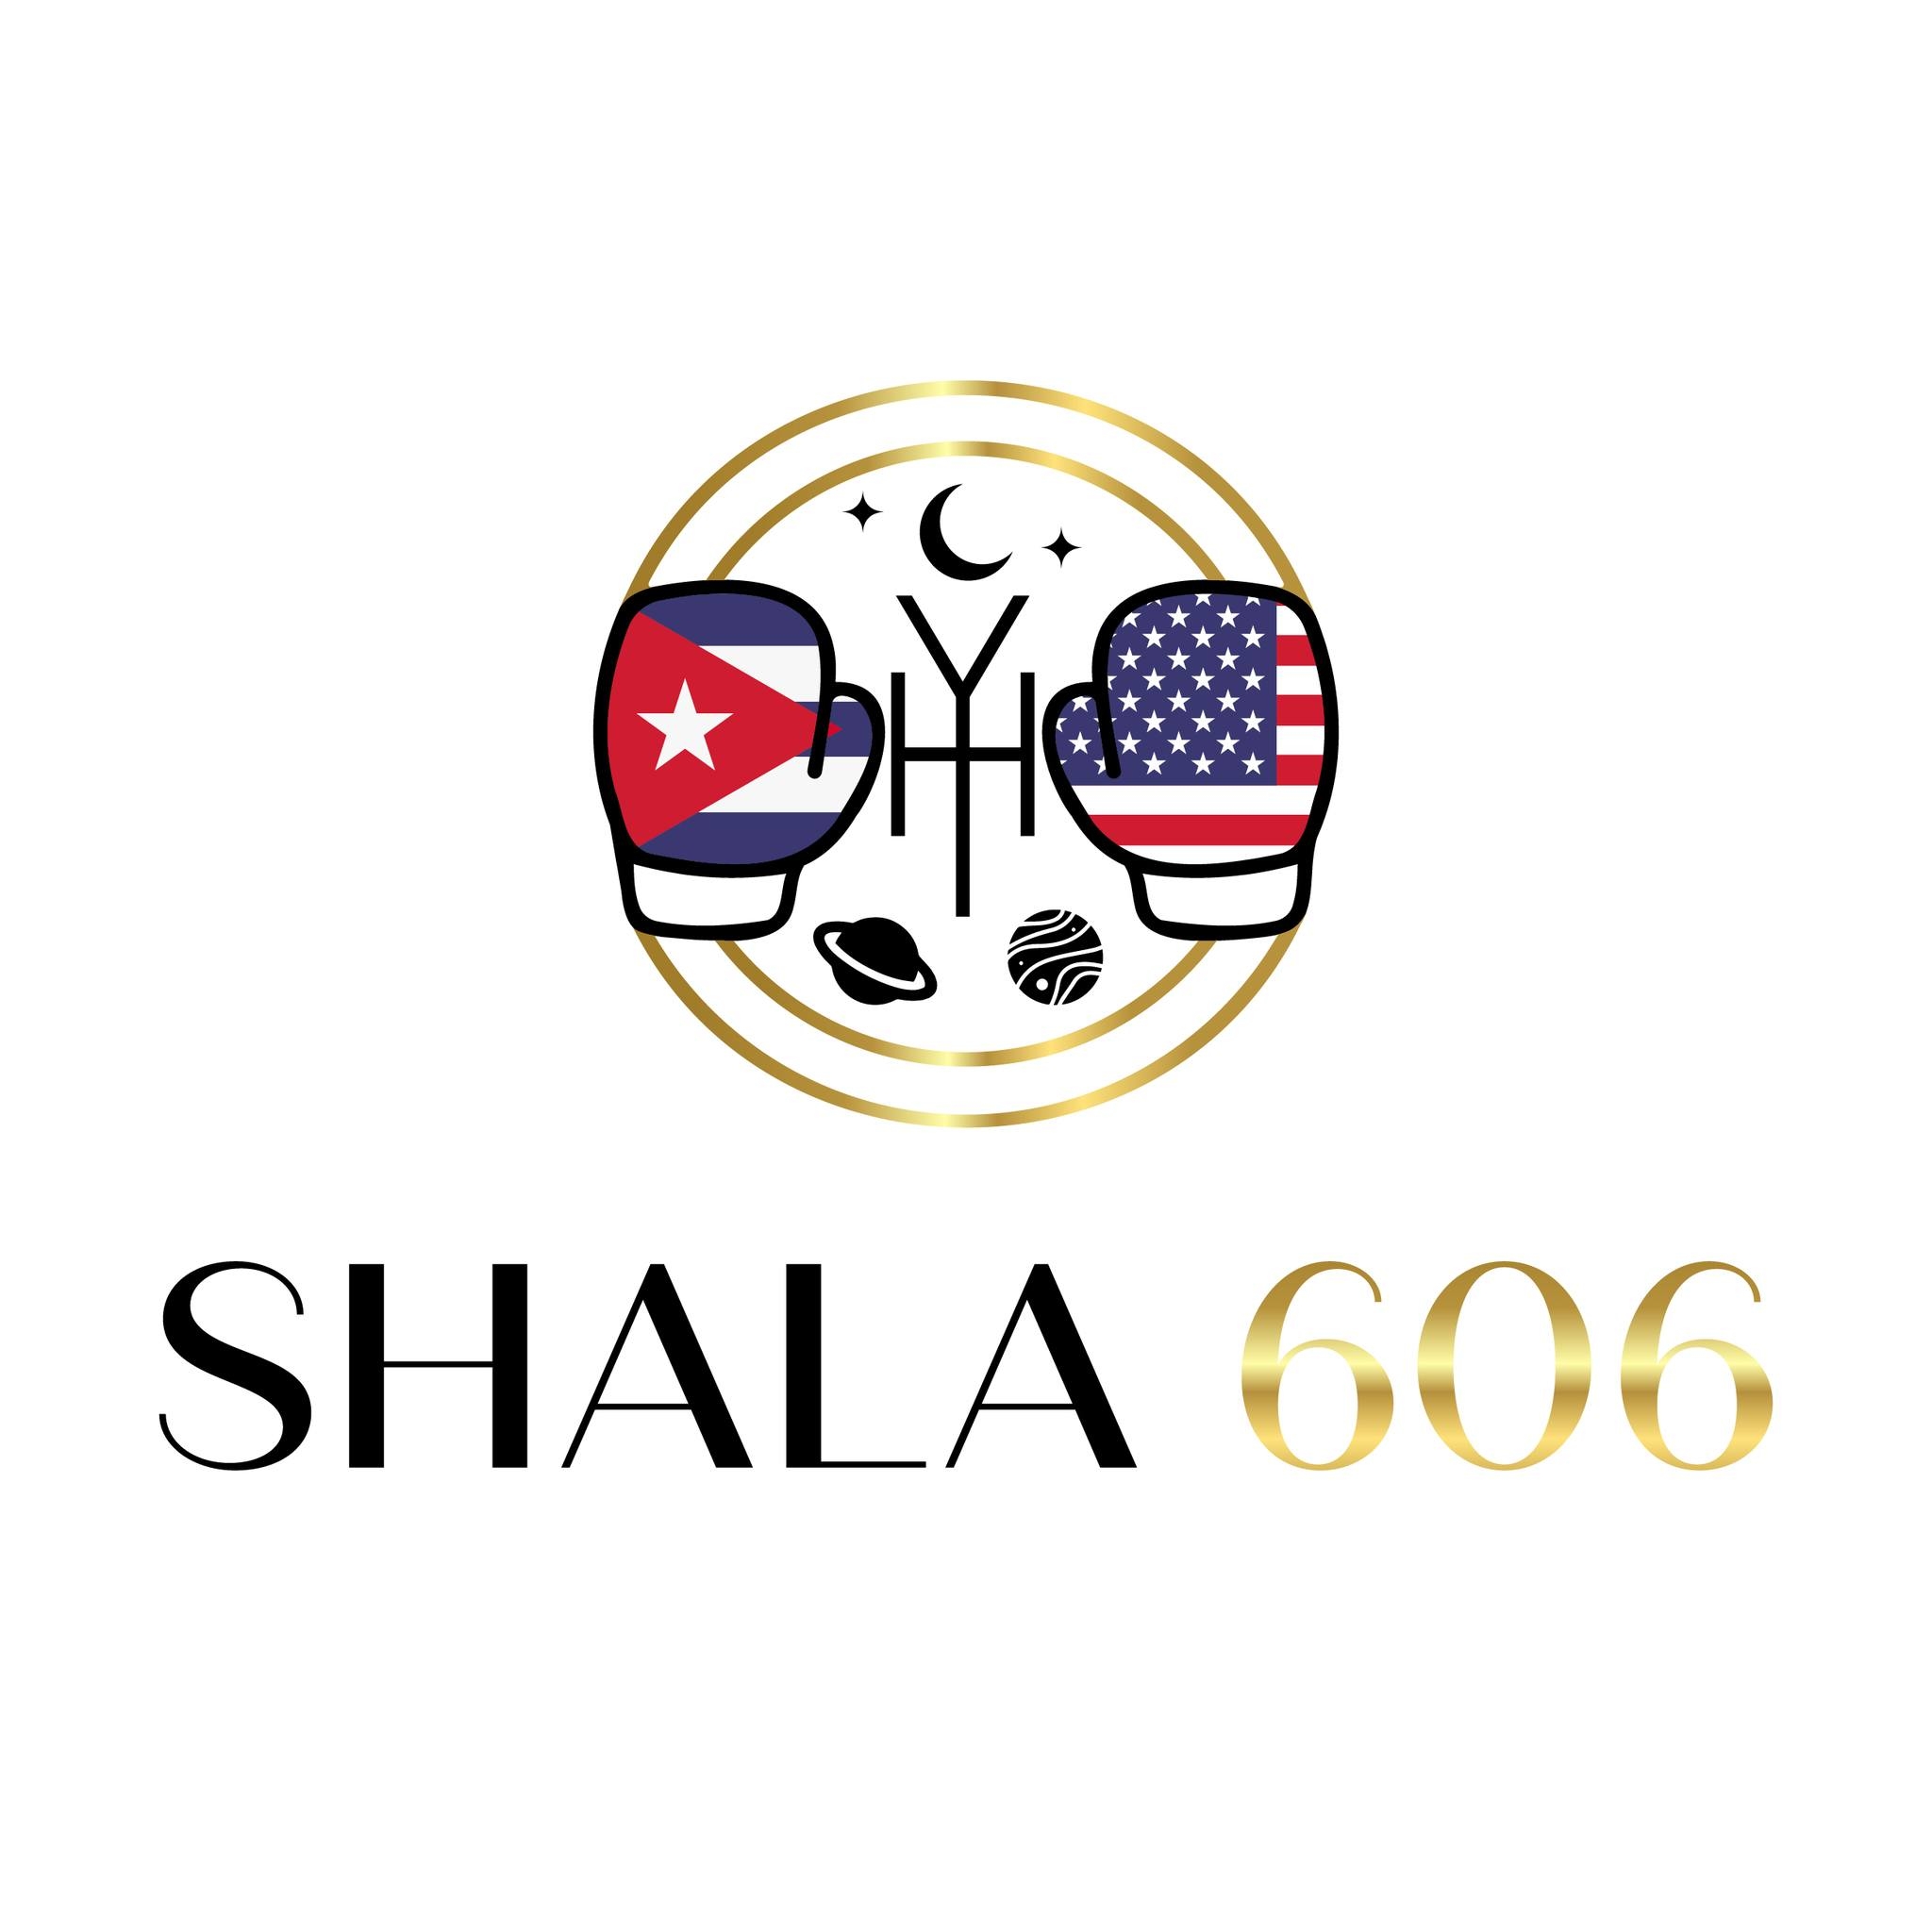 Shala 606 Logo